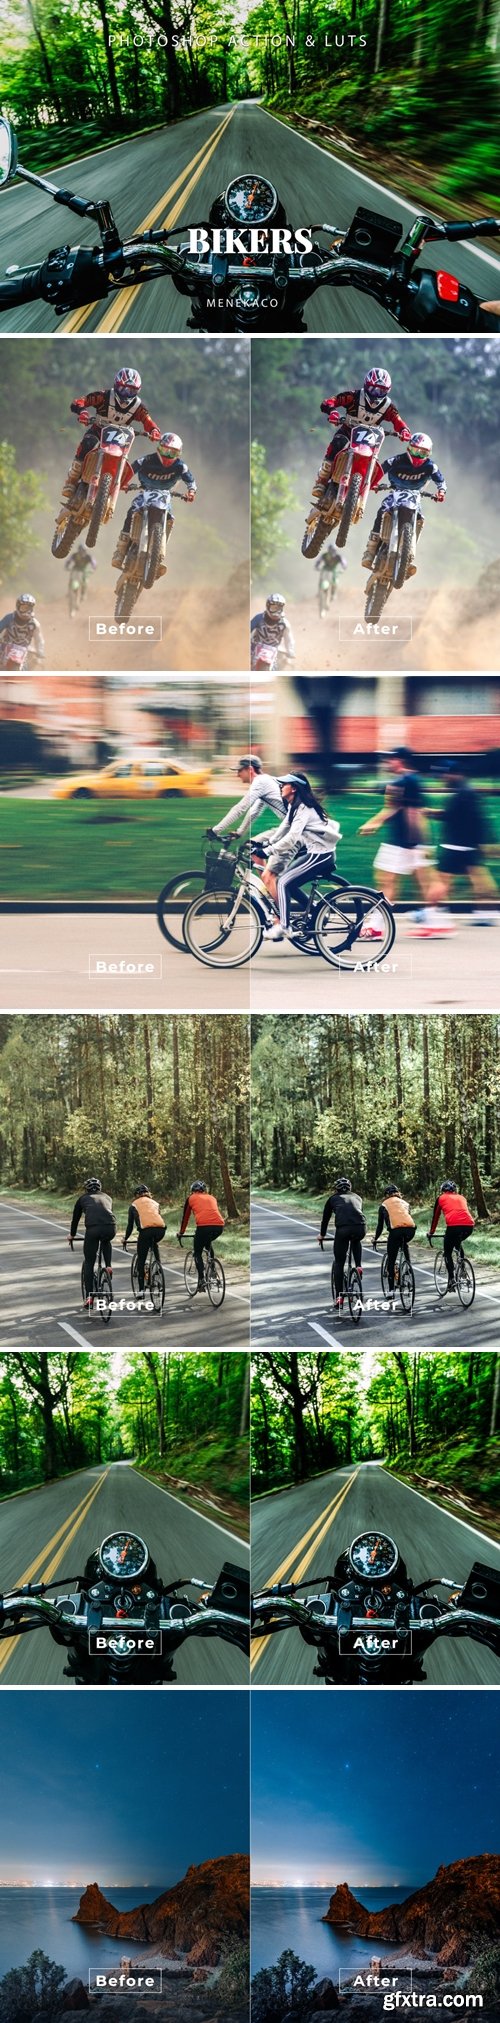 Bikers Photoshop Action & LUTs